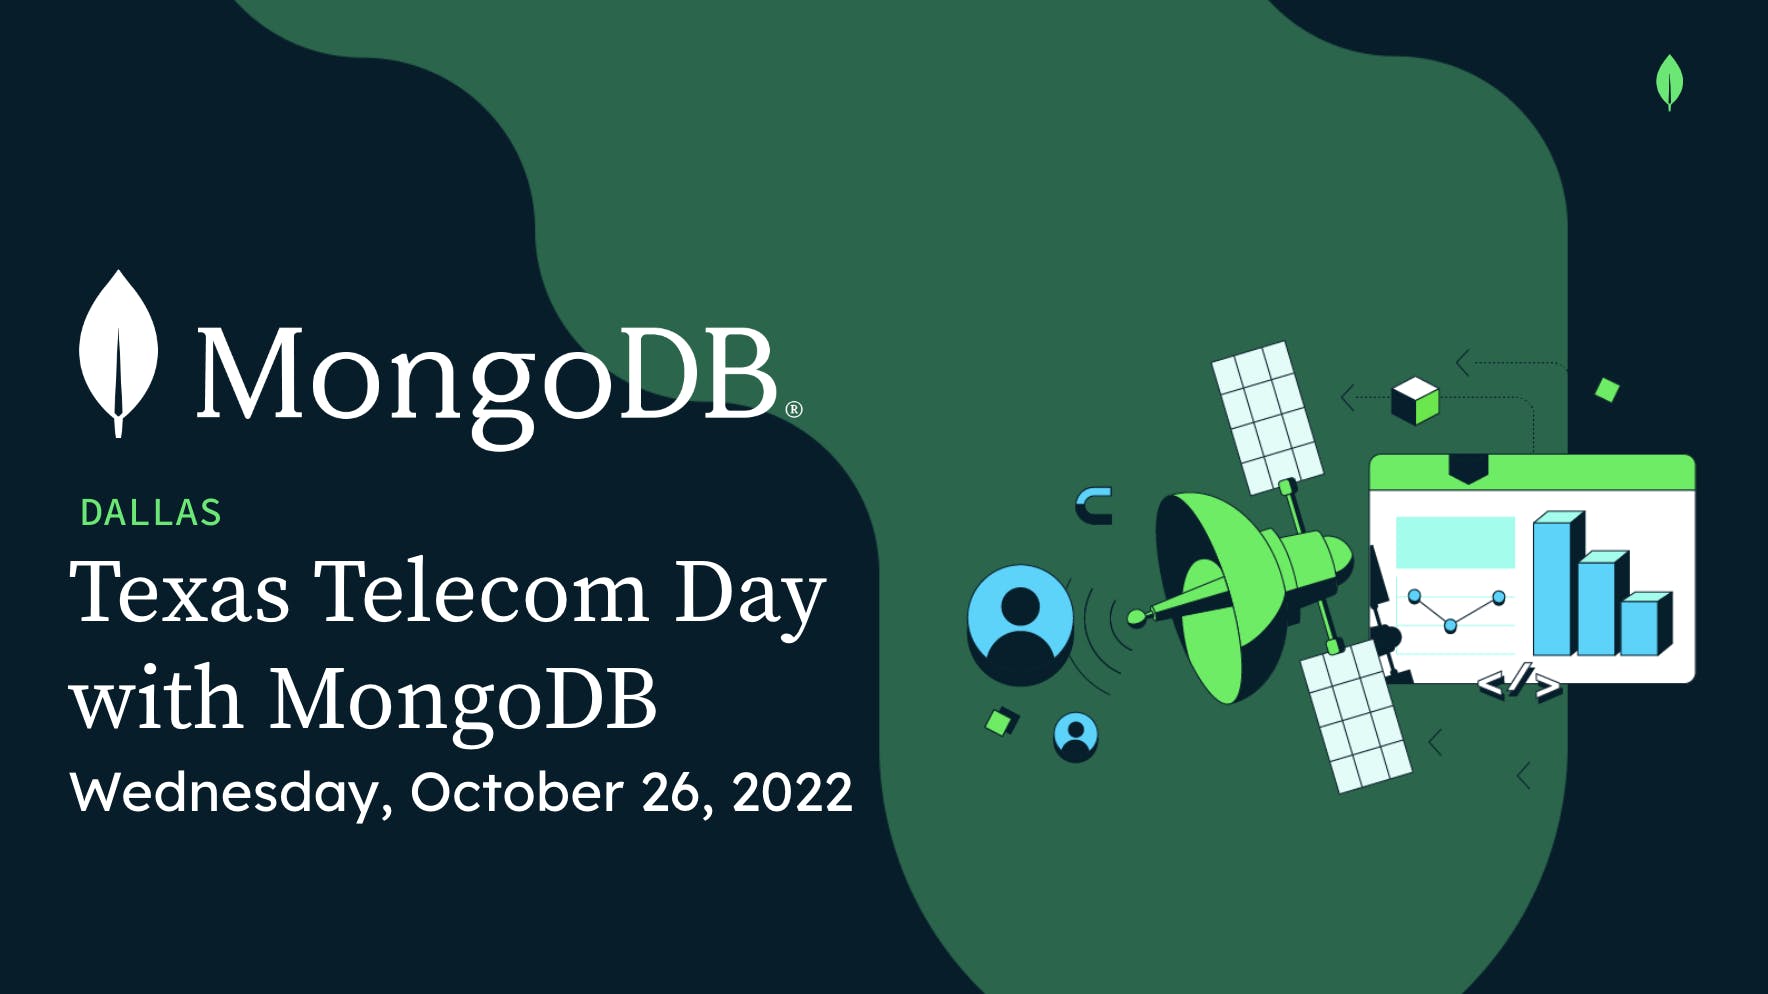 Texas Telecom Day with MongoDB